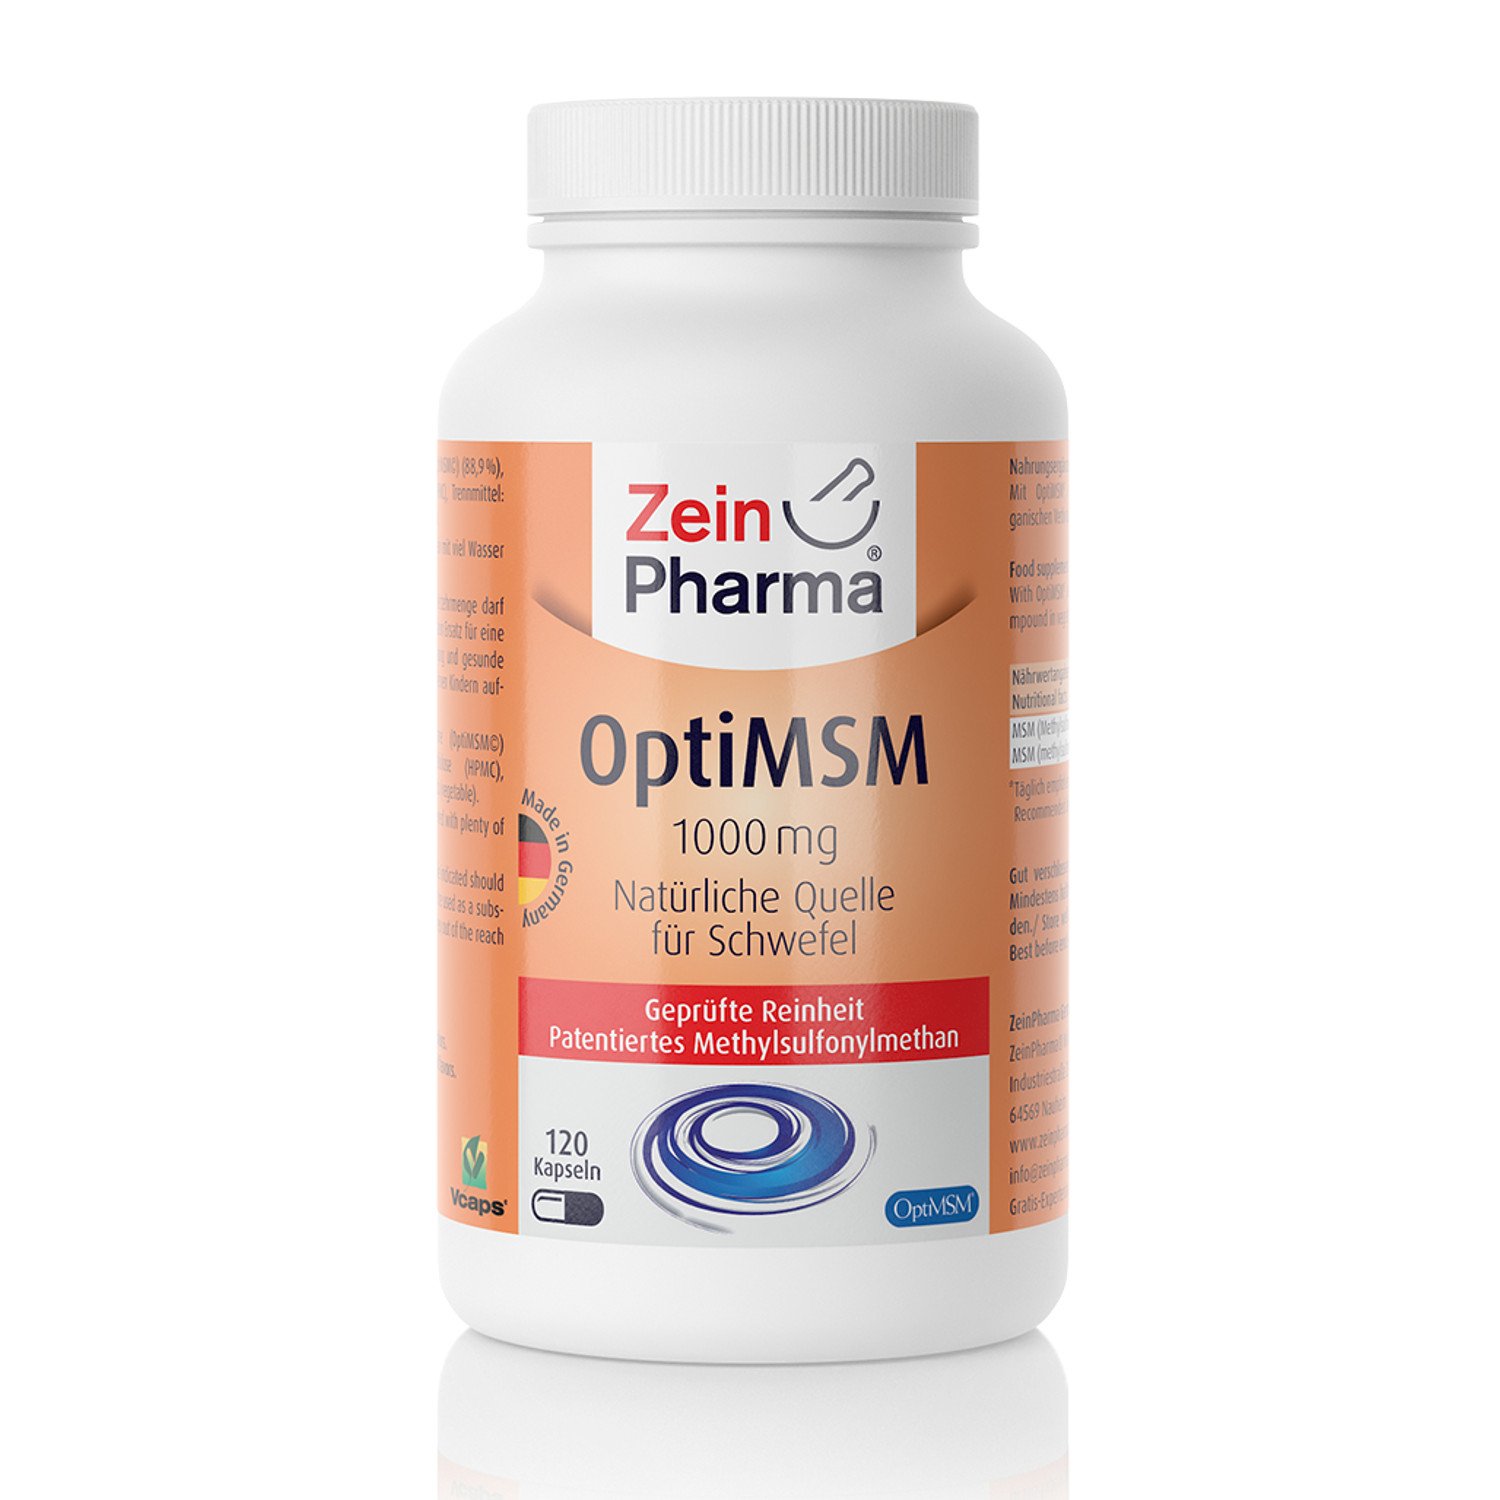 ZeinPharma OptiMSM 120 Kapseln 1000 mg - 135g